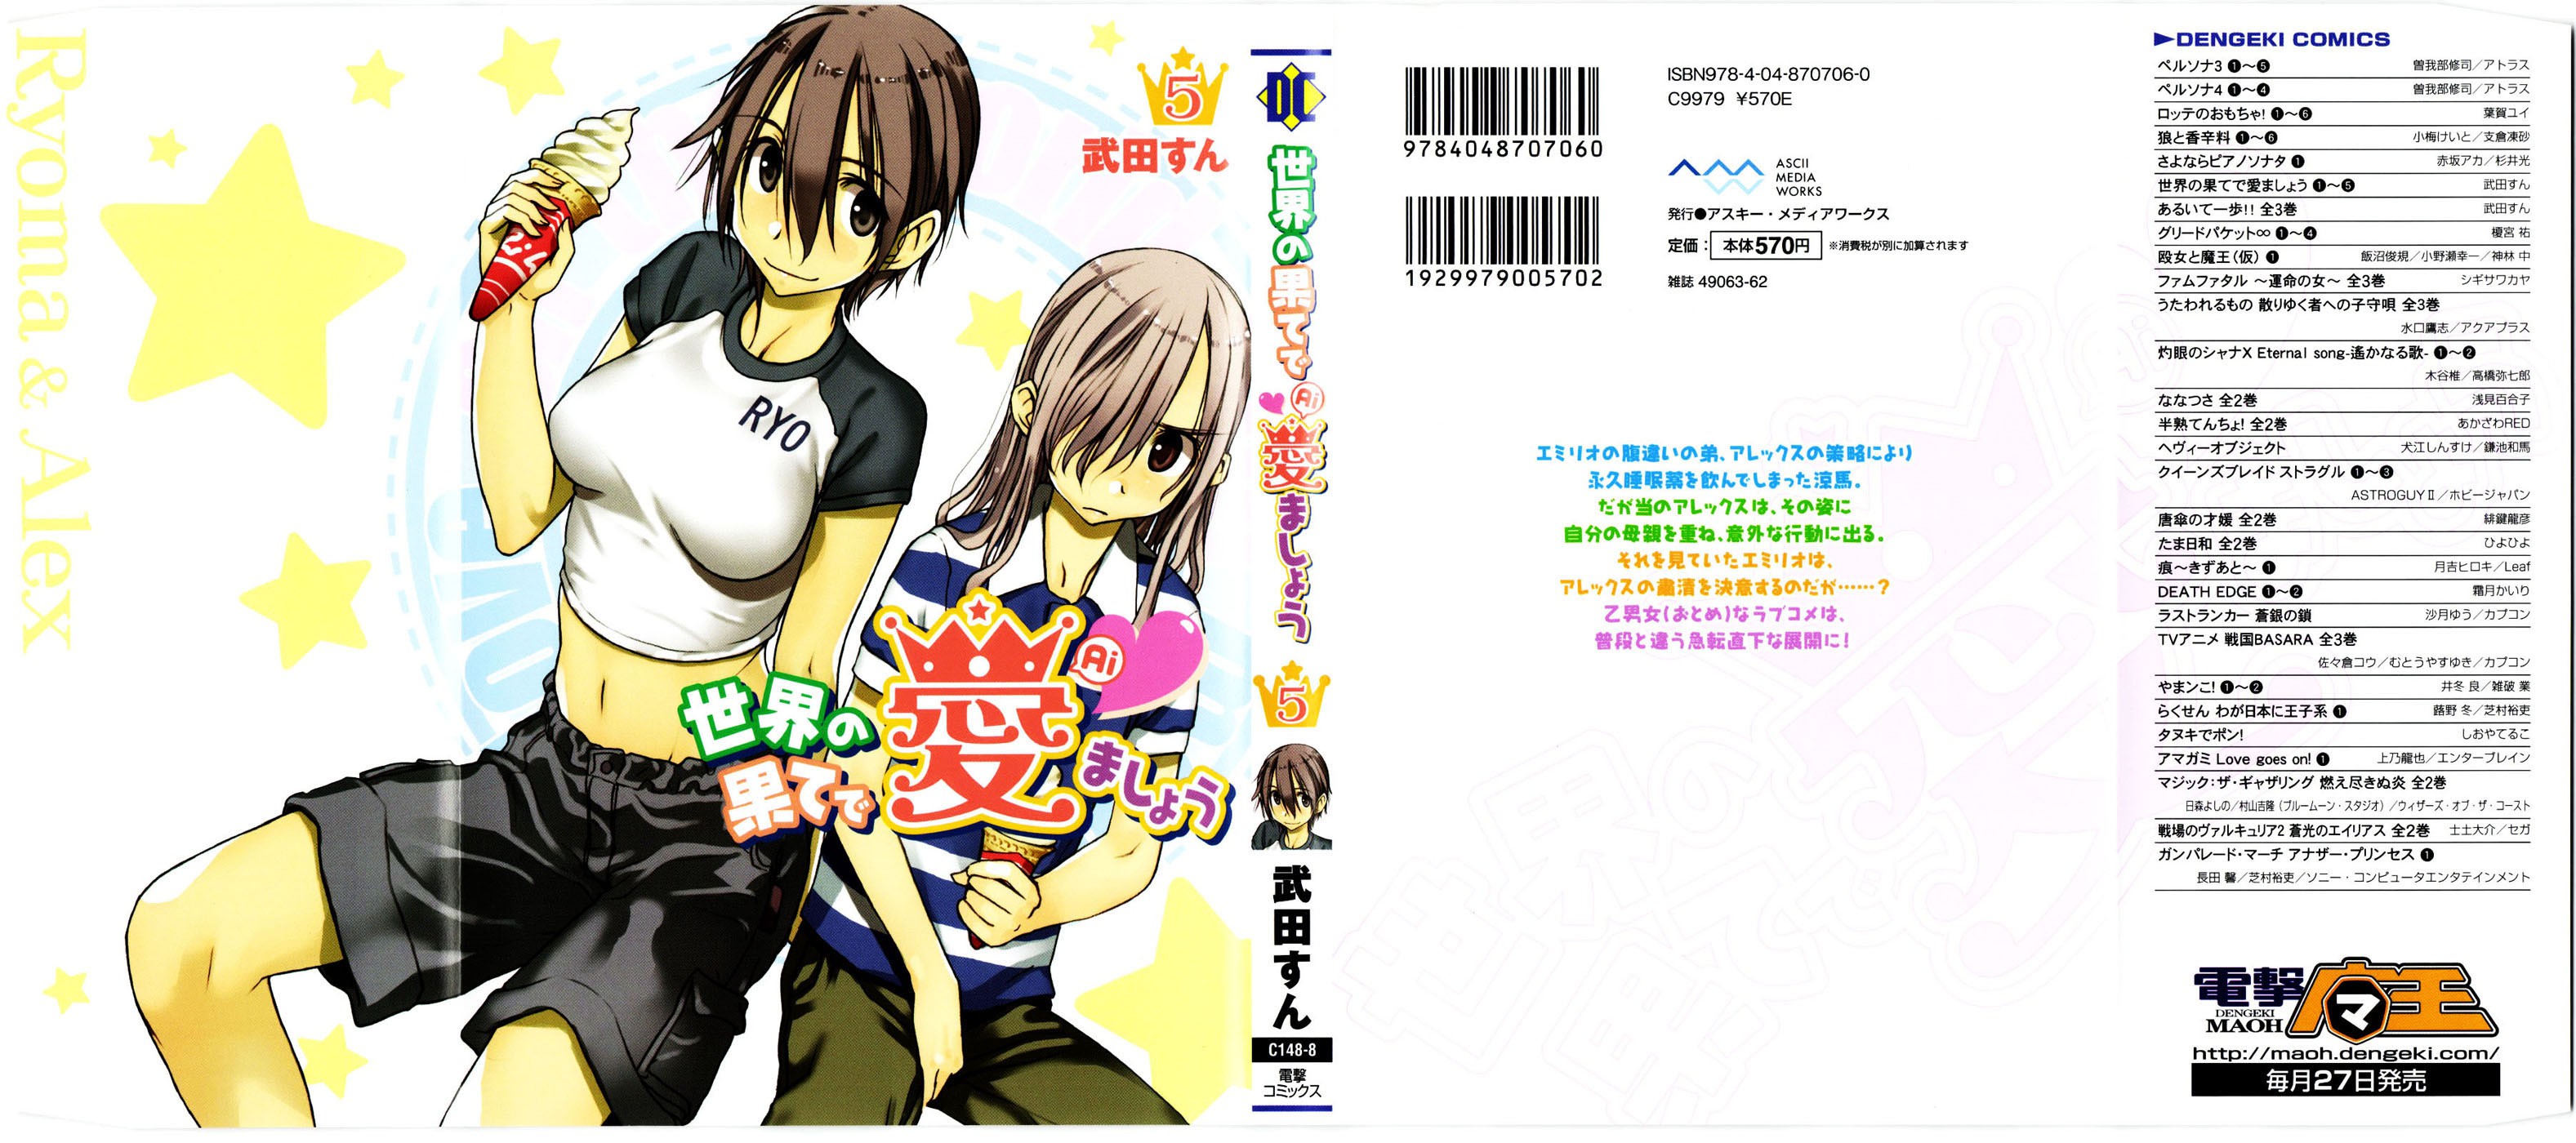 Языки глава 25. Sekainohate de Aimashou Manga Reader.